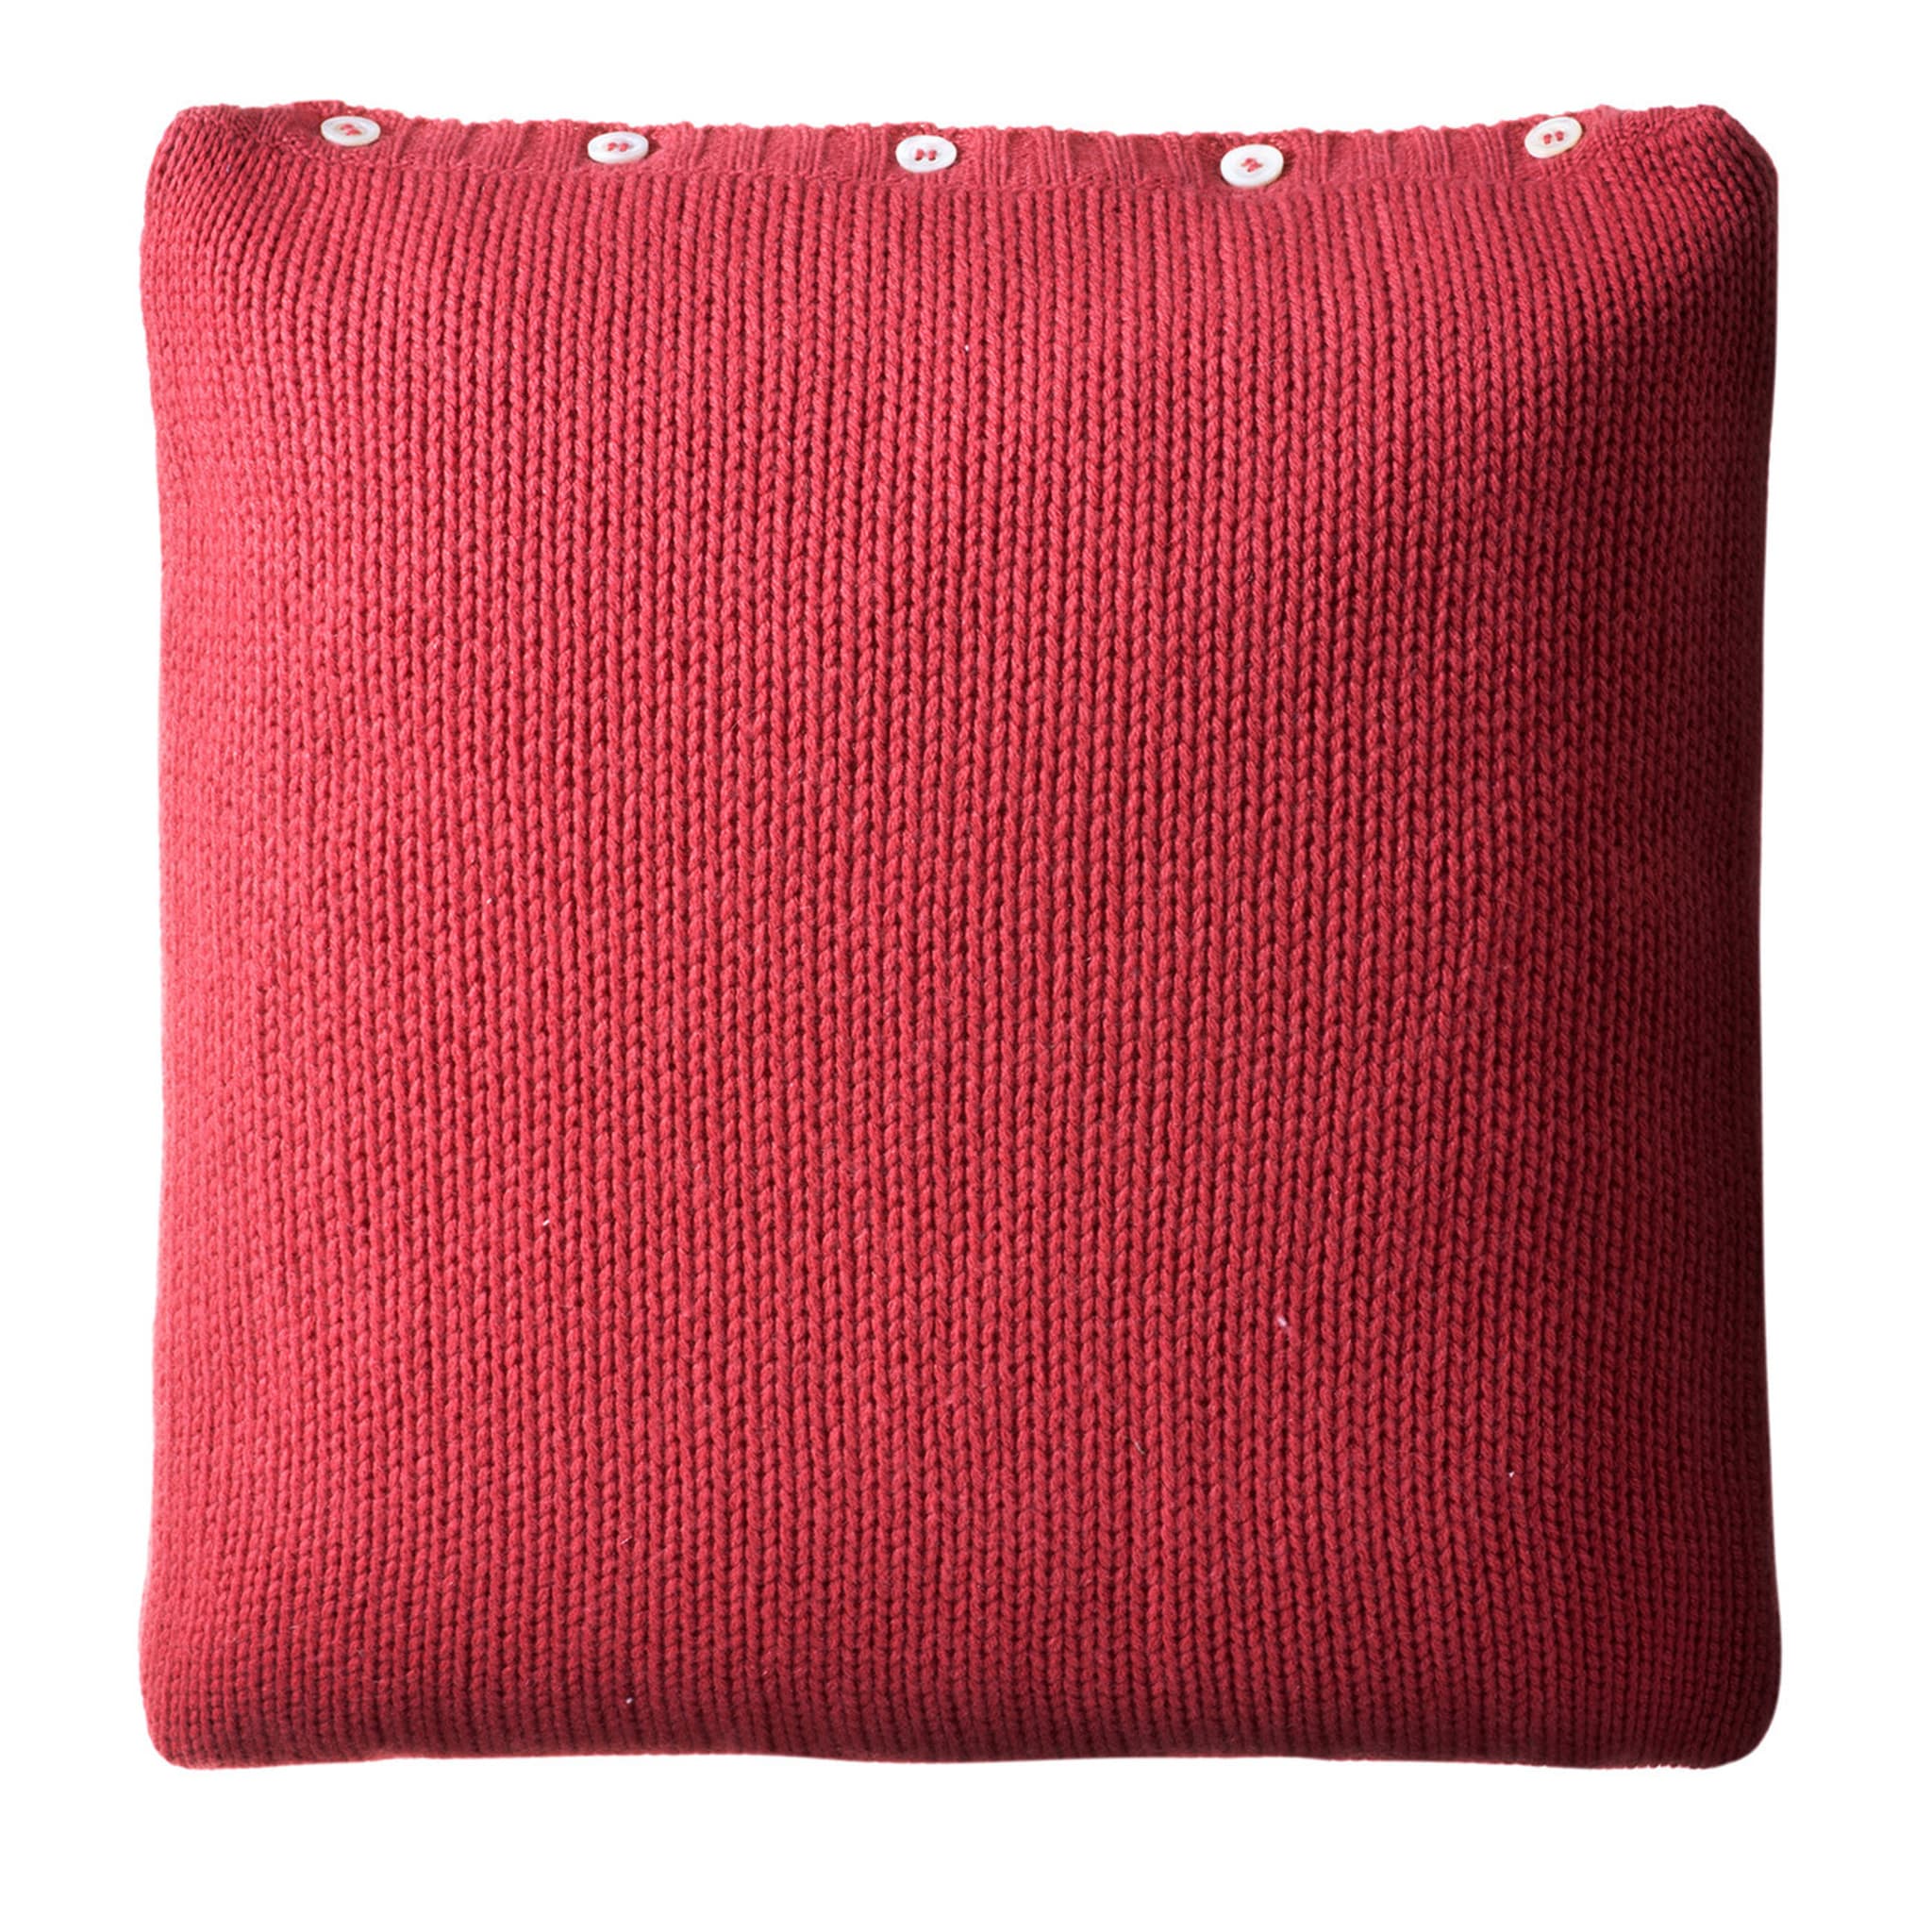 Cuscino quadrato in tricot di corallo - Vista principale